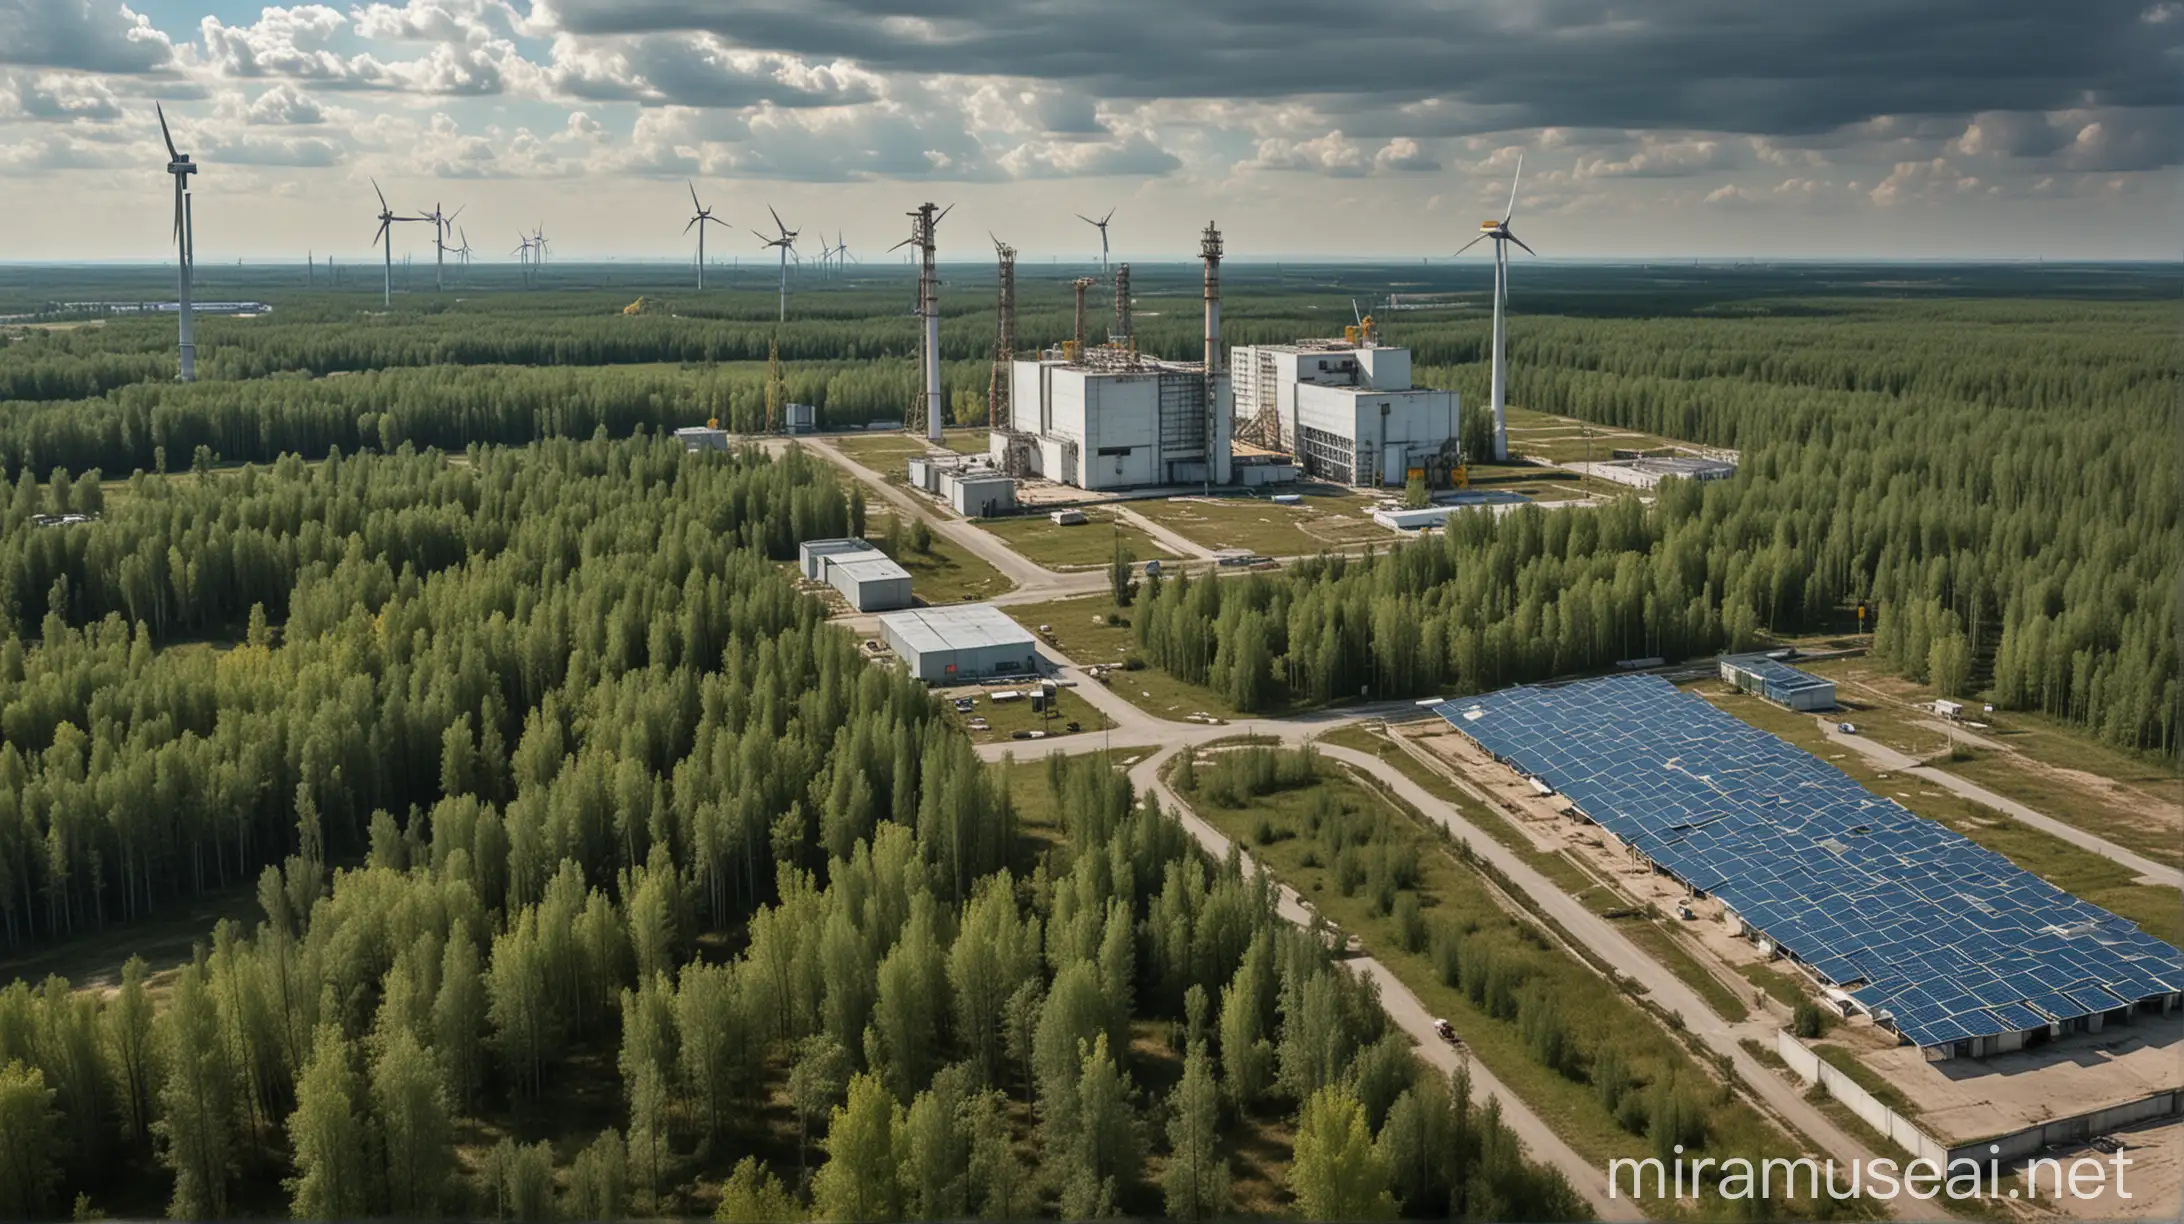 A imagem retrata a zona de exclusão de Chernobyl em um cenário que combina elementos de avanços científicos e renovação ambiental. No centro da imagem, vemos um laboratório de pesquisa moderno e futurista, onde cientistas e pesquisadores trabalham diligentemente em projetos para entender os efeitos da radiação na vida selvagem e desenvolver soluções inovadoras para a recuperação ambiental.

Ao redor do laboratório, a paisagem é dominada por uma vegetação exuberante e vibrante, mostrando a resiliência da natureza à adversidade. Espécies de animais silvestres, como lobos, cervos e pássaros, vagueiam livremente pela paisagem, simbolizando a renovação da vida selvagem em Chernobyl.

No céu, painéis solares e turbinas eólicas pontuam a paisagem, representando os esforços para desenvolver fontes de energia renovável na região. Os painéis solares captam a luz do sol enquanto as turbinas eólicas giram suavemente ao vento, demonstrando o potencial de Chernobyl para se tornar um centro de energia limpa e sustentável.

Ao fundo, vemos a icônica usina nuclear de Chernobyl, agora coberta pelo sarcófago de concreto, lembrando os eventos do passado e destacando o contraste entre o antigo e o novo, o passado e o futuro.

A paleta de cores da imagem é dominada por tons de verde, representando a esperança e a renovação, enquanto toques de azul e amarelo simbolizam a ciência e a inovação. O ambiente geral da imagem é de otimismo e progresso, transmitindo a ideia de um futuro promissor para Chernobyl.

Esta imagem única encapsula a essência do tema "O Futuro de Chernobyl", combinando elementos de avanços científicos, renovação ambiental e esperança para uma região que enfrentou grandes desafios.